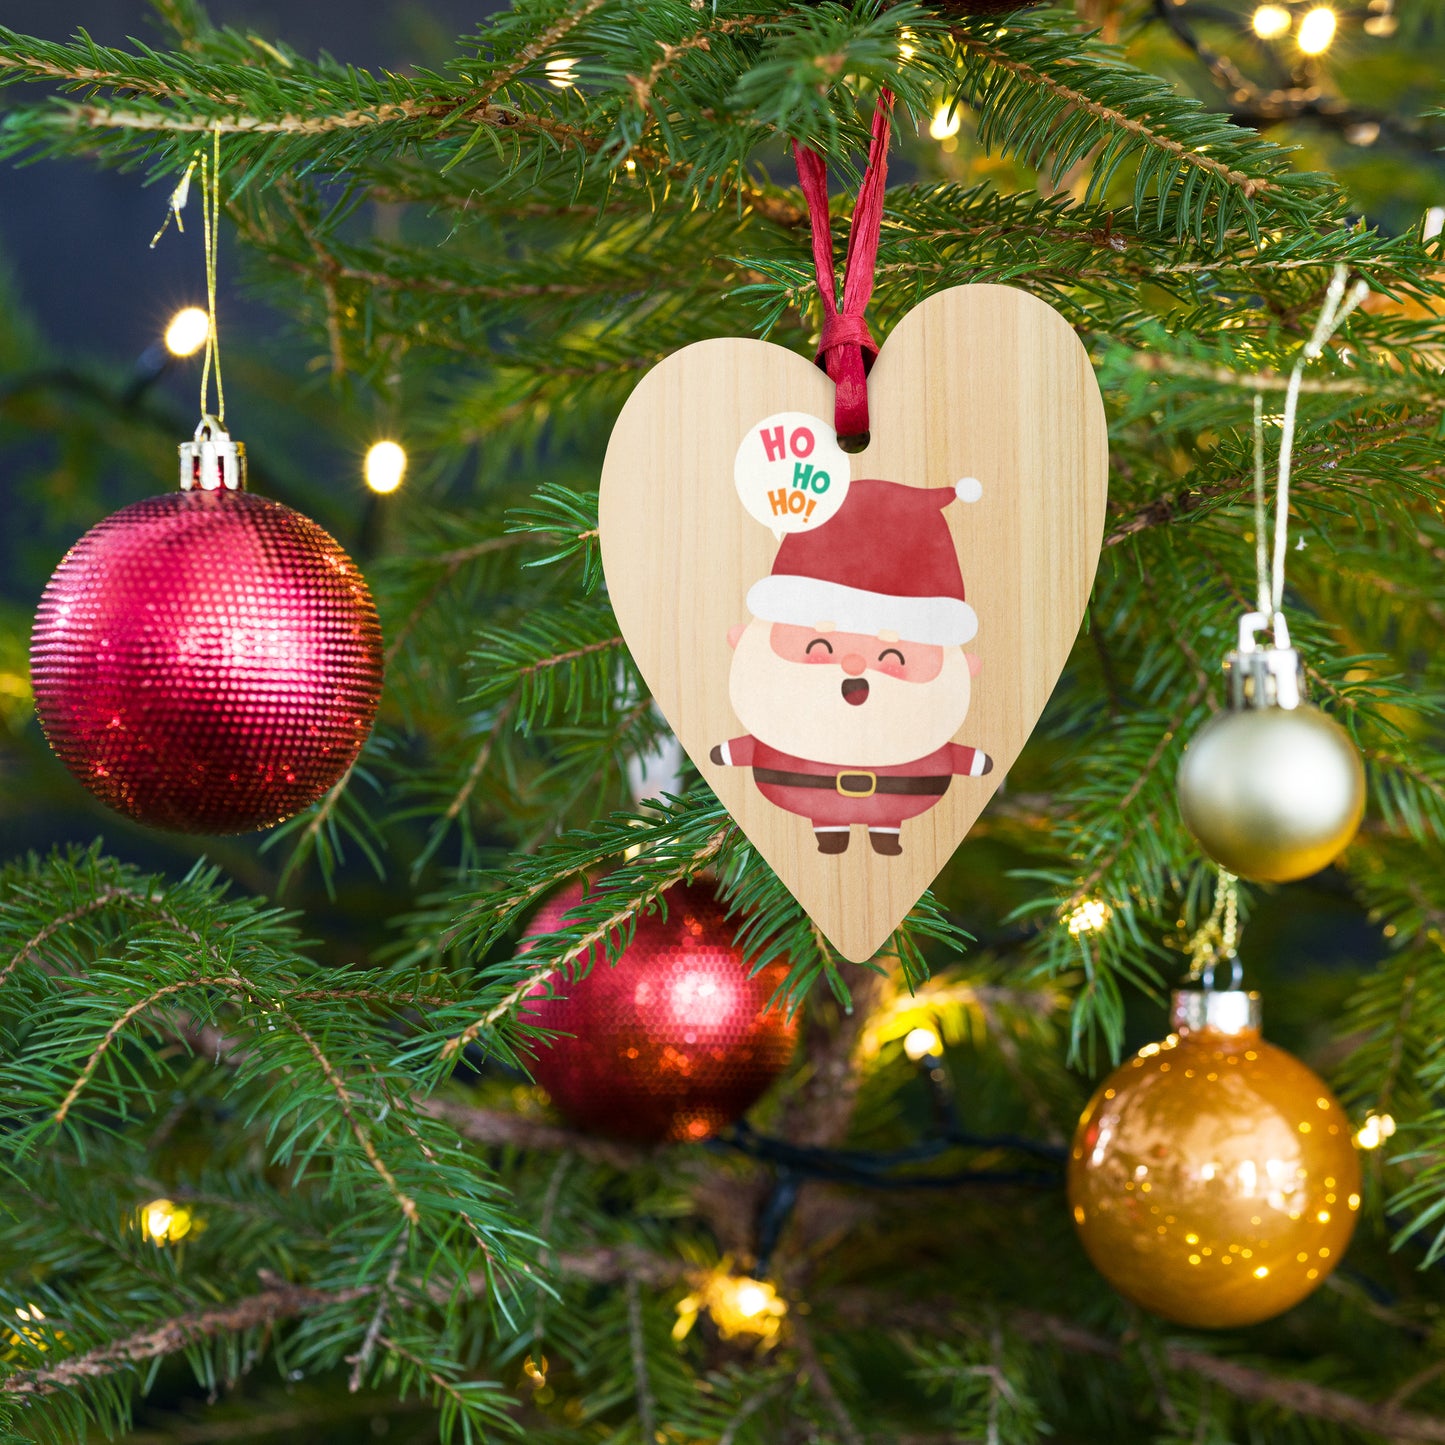 Wooden ornaments - HO HO HO Santa heart front